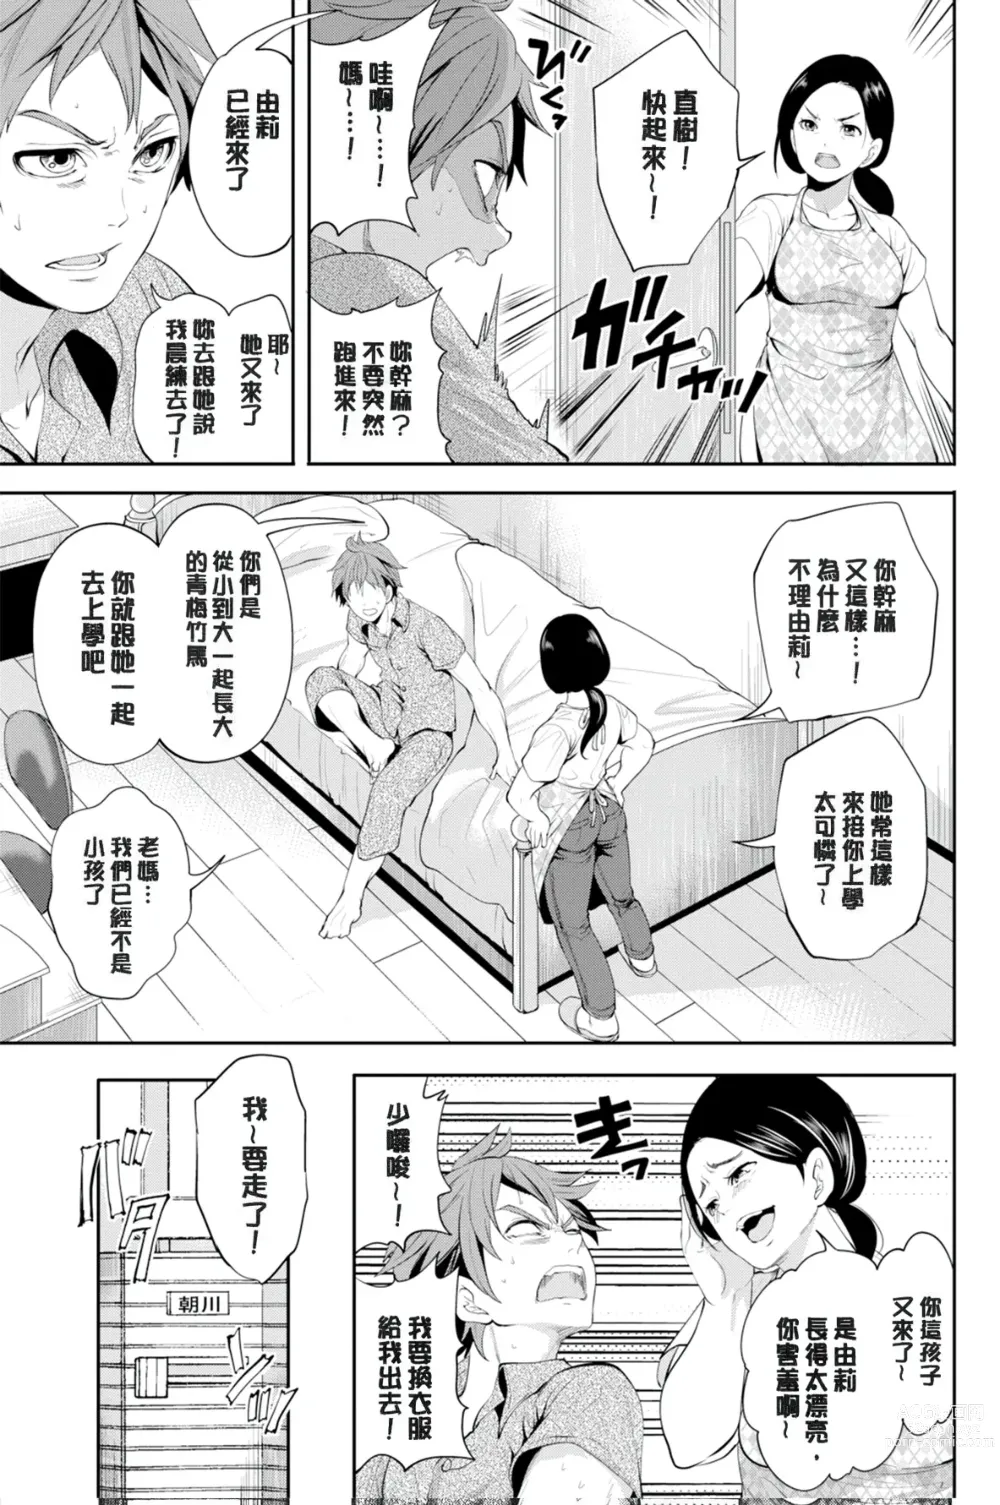 Page 7 of manga Suki na Ko ga, Betsu no Otoko to